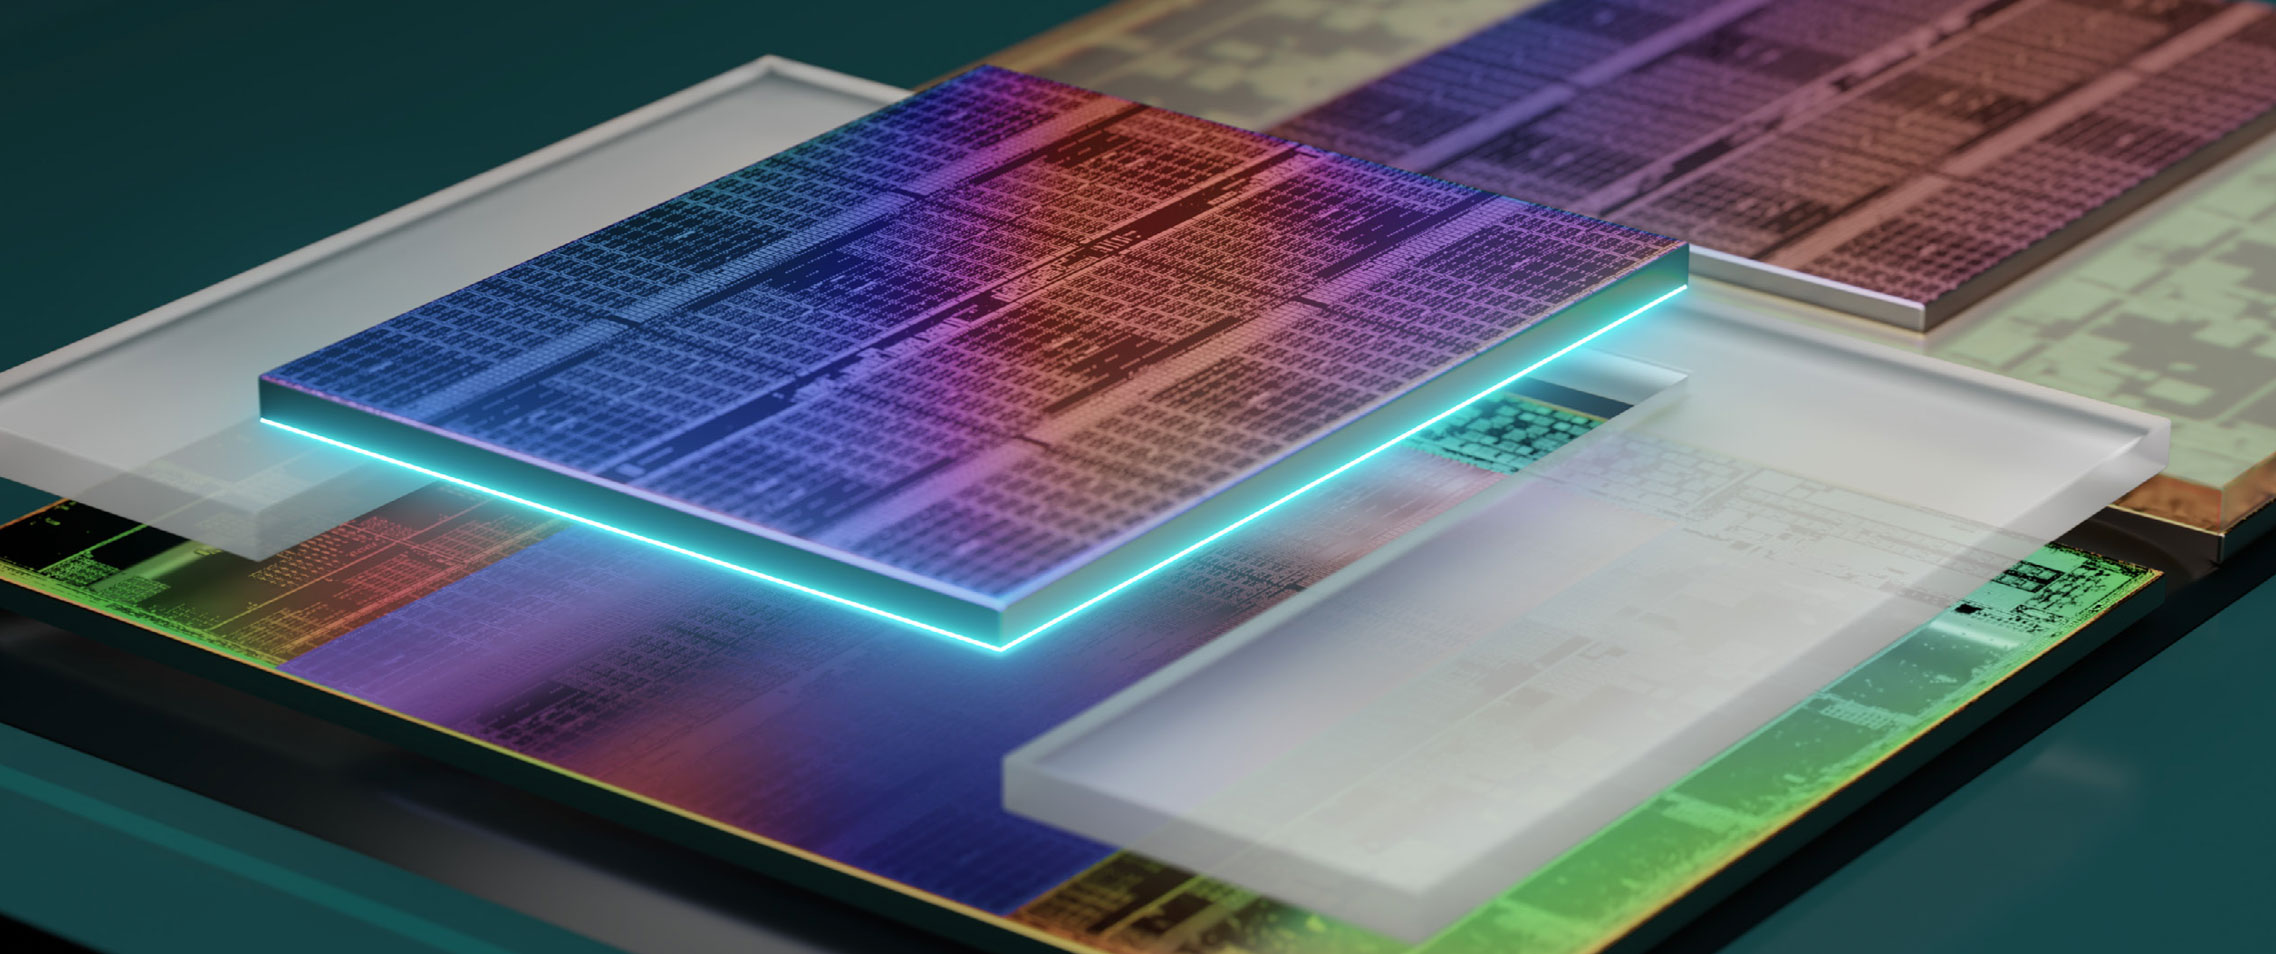 AMD wprowadza do sprzedaży swój pierwszy procesor wielowarstwowy